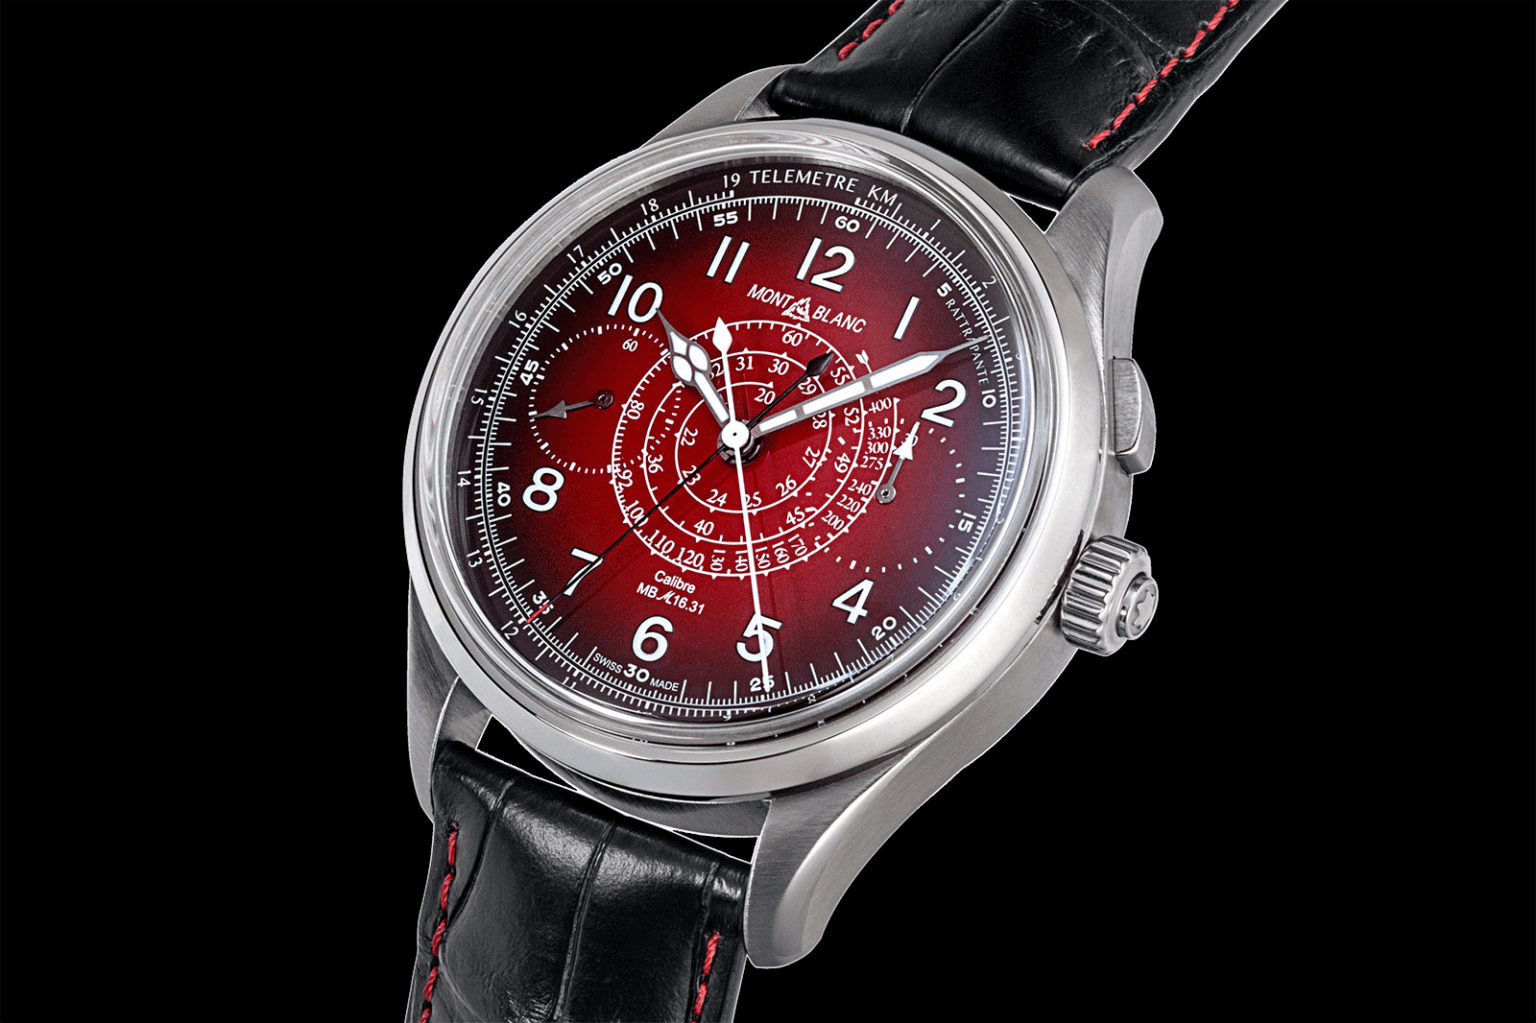 đồng hồ chronograph tách giây split second montblanc 1858 mặt số màu đỏ 